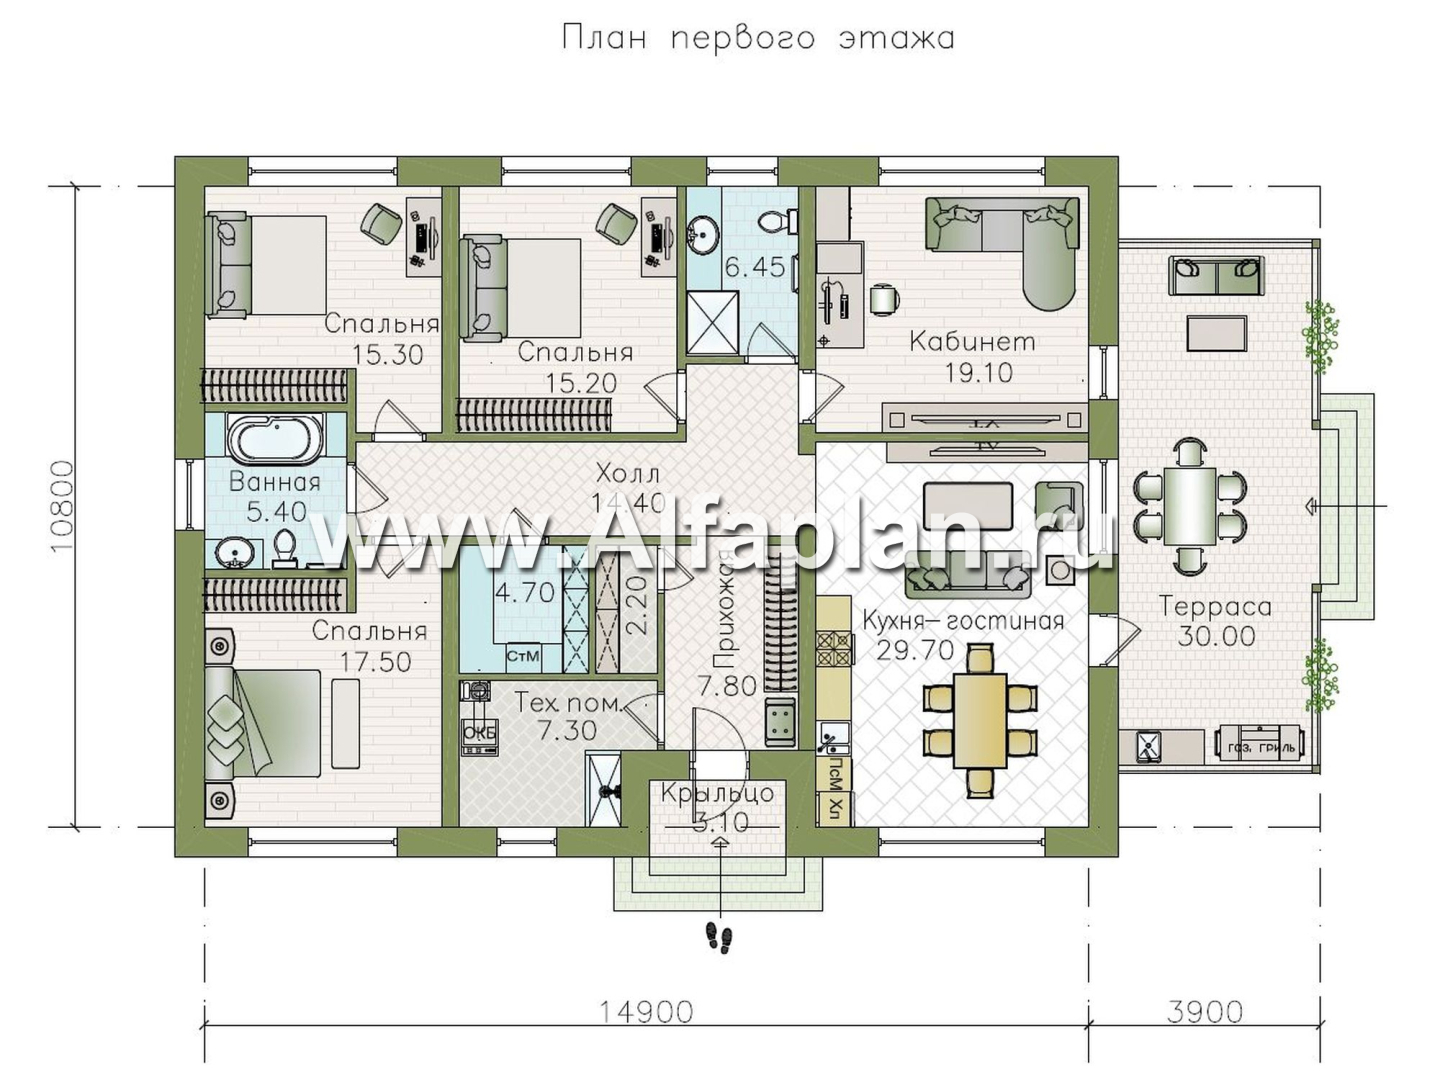 «Розенхайм» - проект одноэтажного дома в баварском стиле, планировка кабинет и 3 спальни, с террасой - план дома